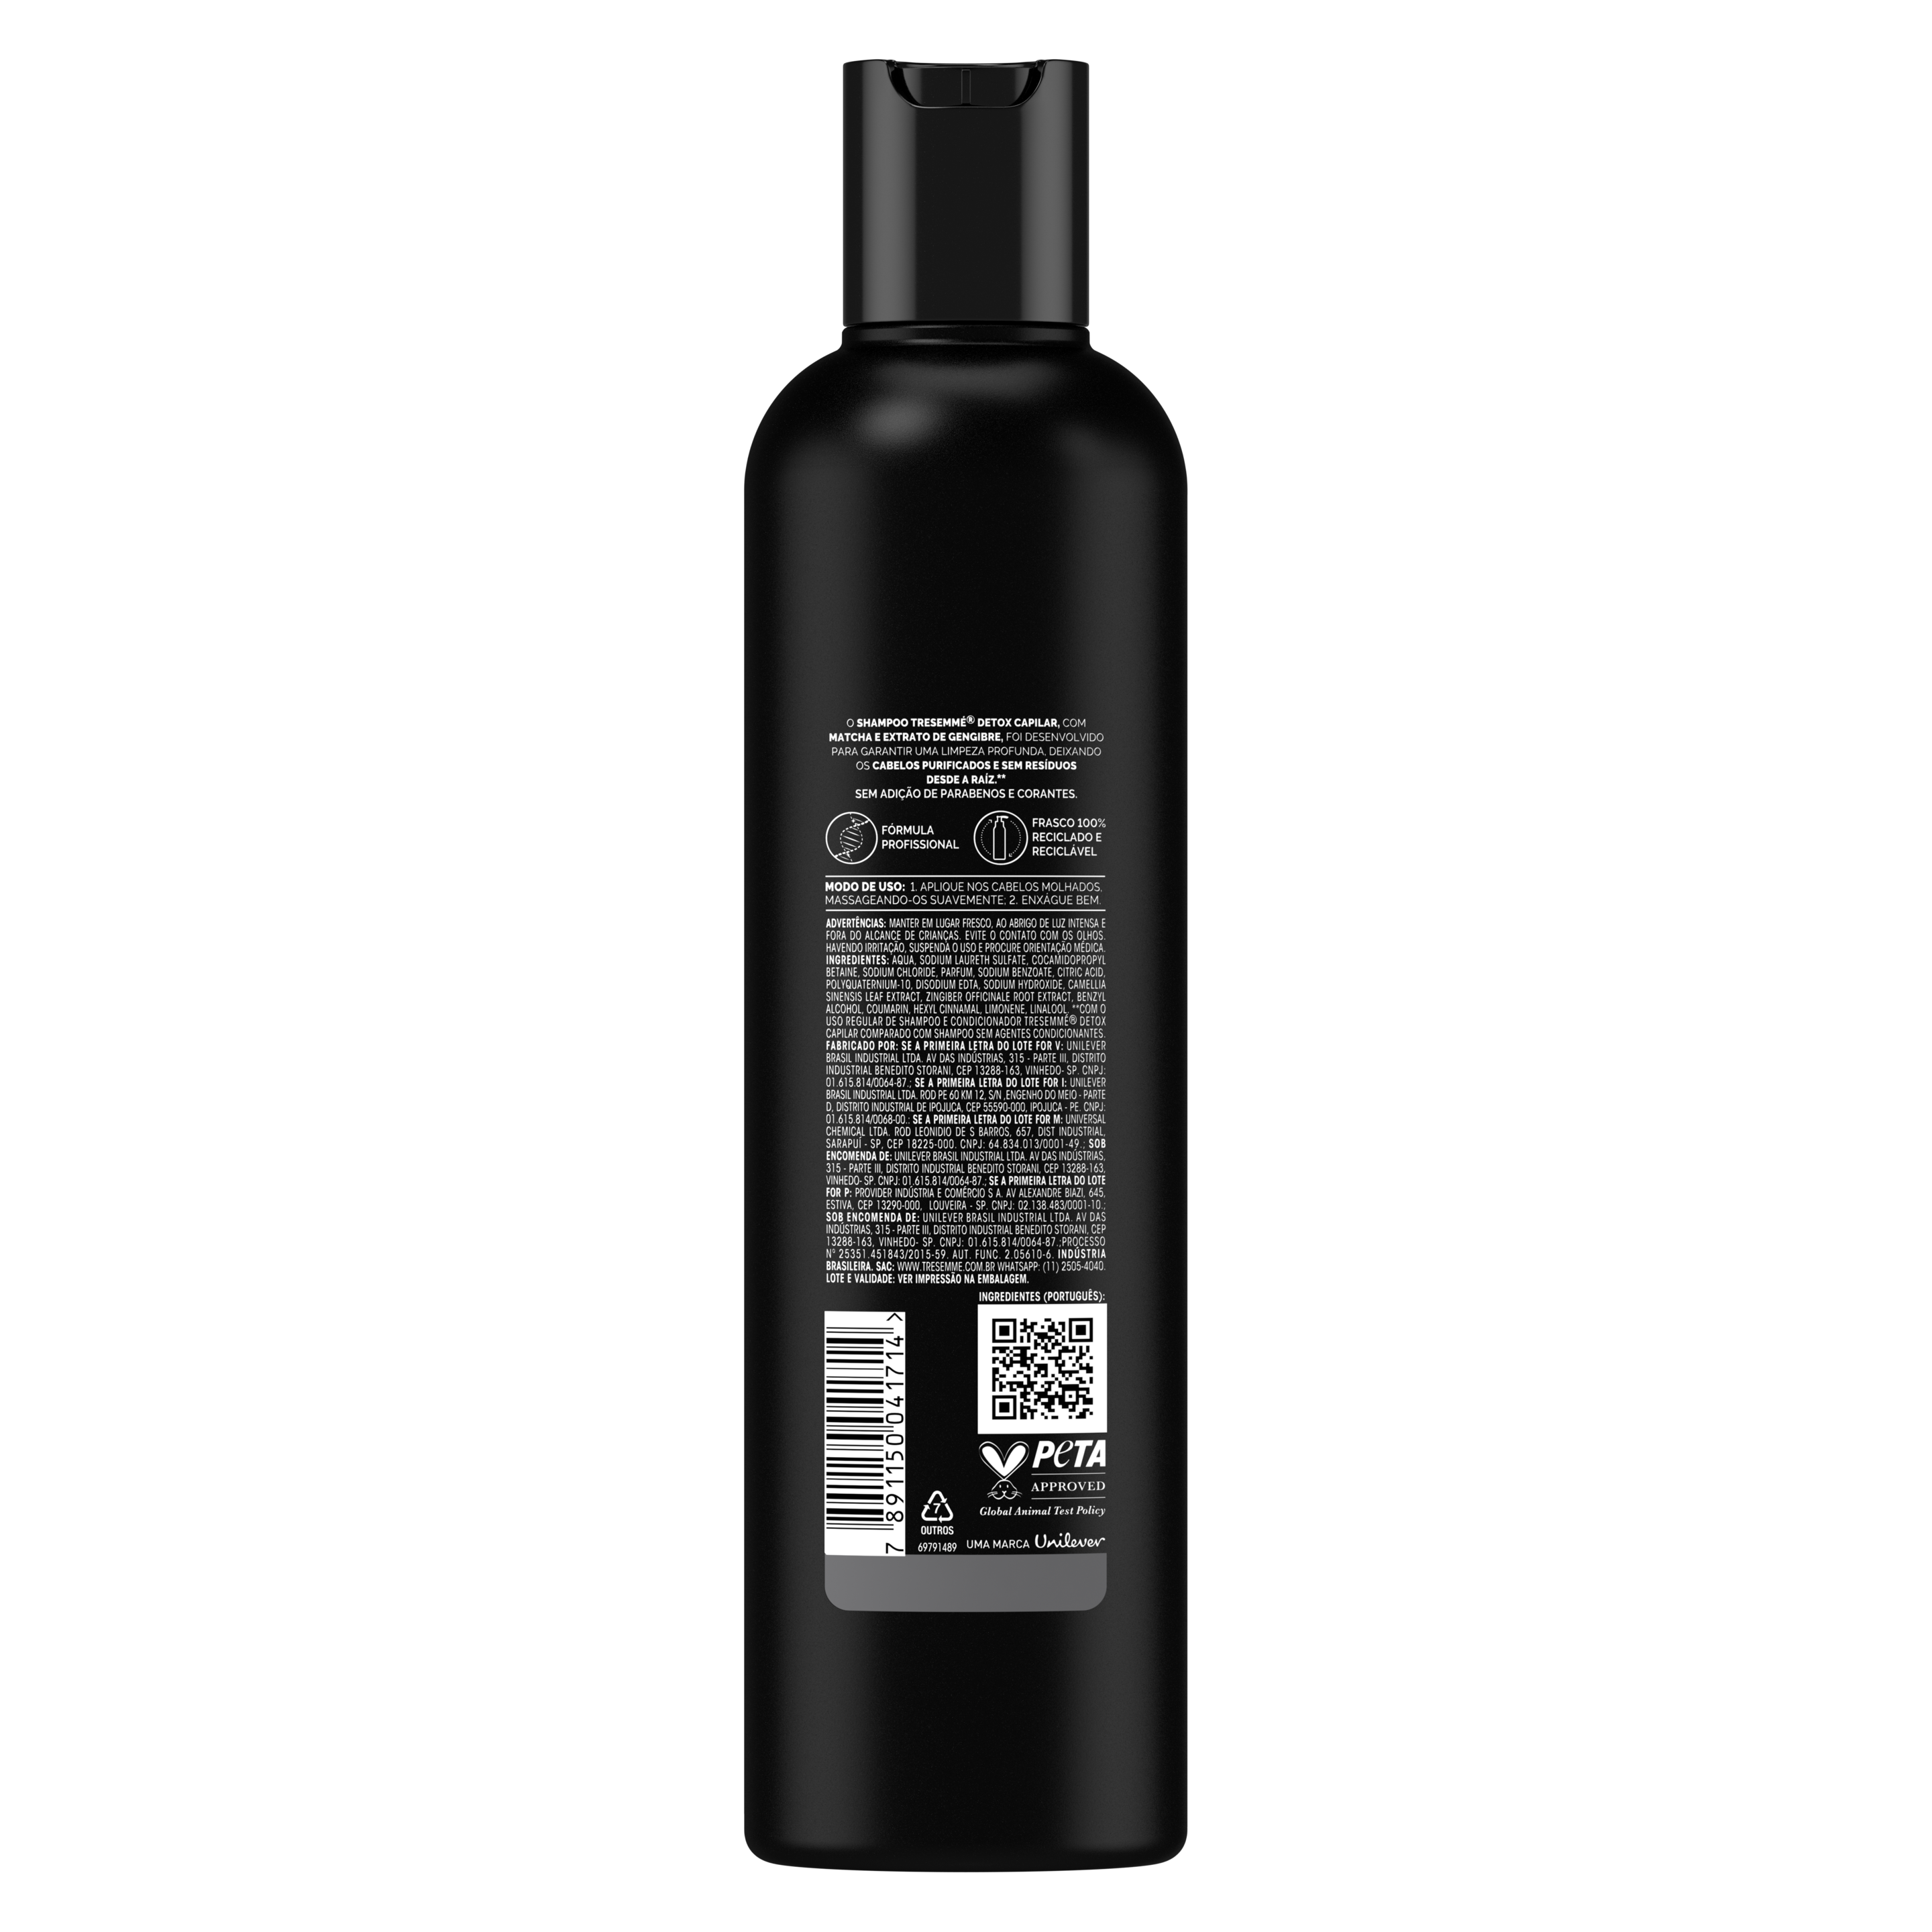 Shampoo TRESemme Detox Capilar 400mL - Parte traseira da embalagem